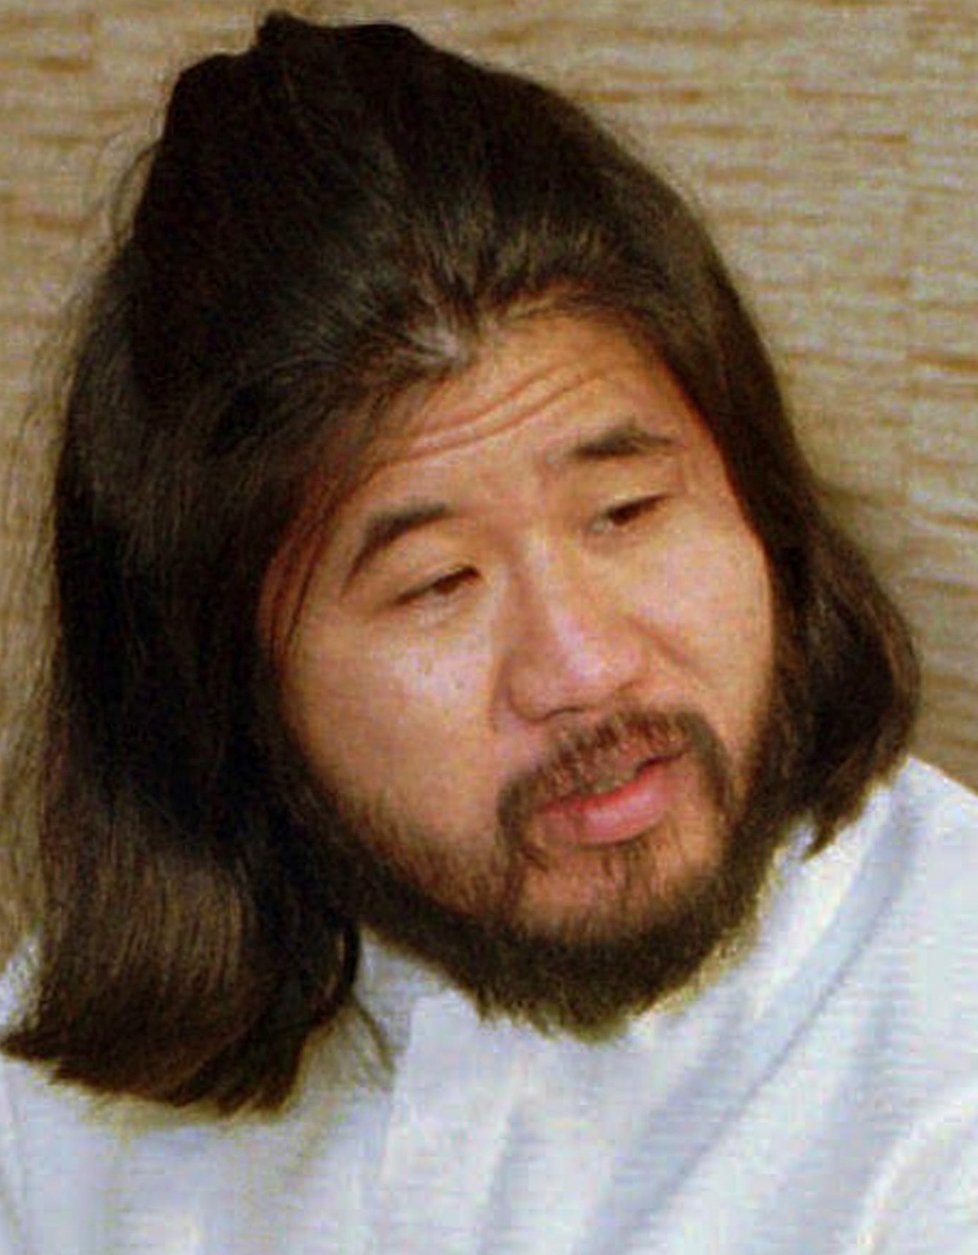 Zakladatel a duchovní vůdce sekty Óm šinrikjó Šókó Asahara. Zavalitého, částečně slepého cvičitele jógy, Asaharu soud v roce 2004 odsoudil k trestu smrti oběšením na základě 13 obvinění; mimo jiné i za přípravu a provedení nejméně 15 vražd, dalších teroristických útoků, únosů nepohodlných osob a jiných zločinů. Poprava ale byla vykonána až nyní (6.7.2018).